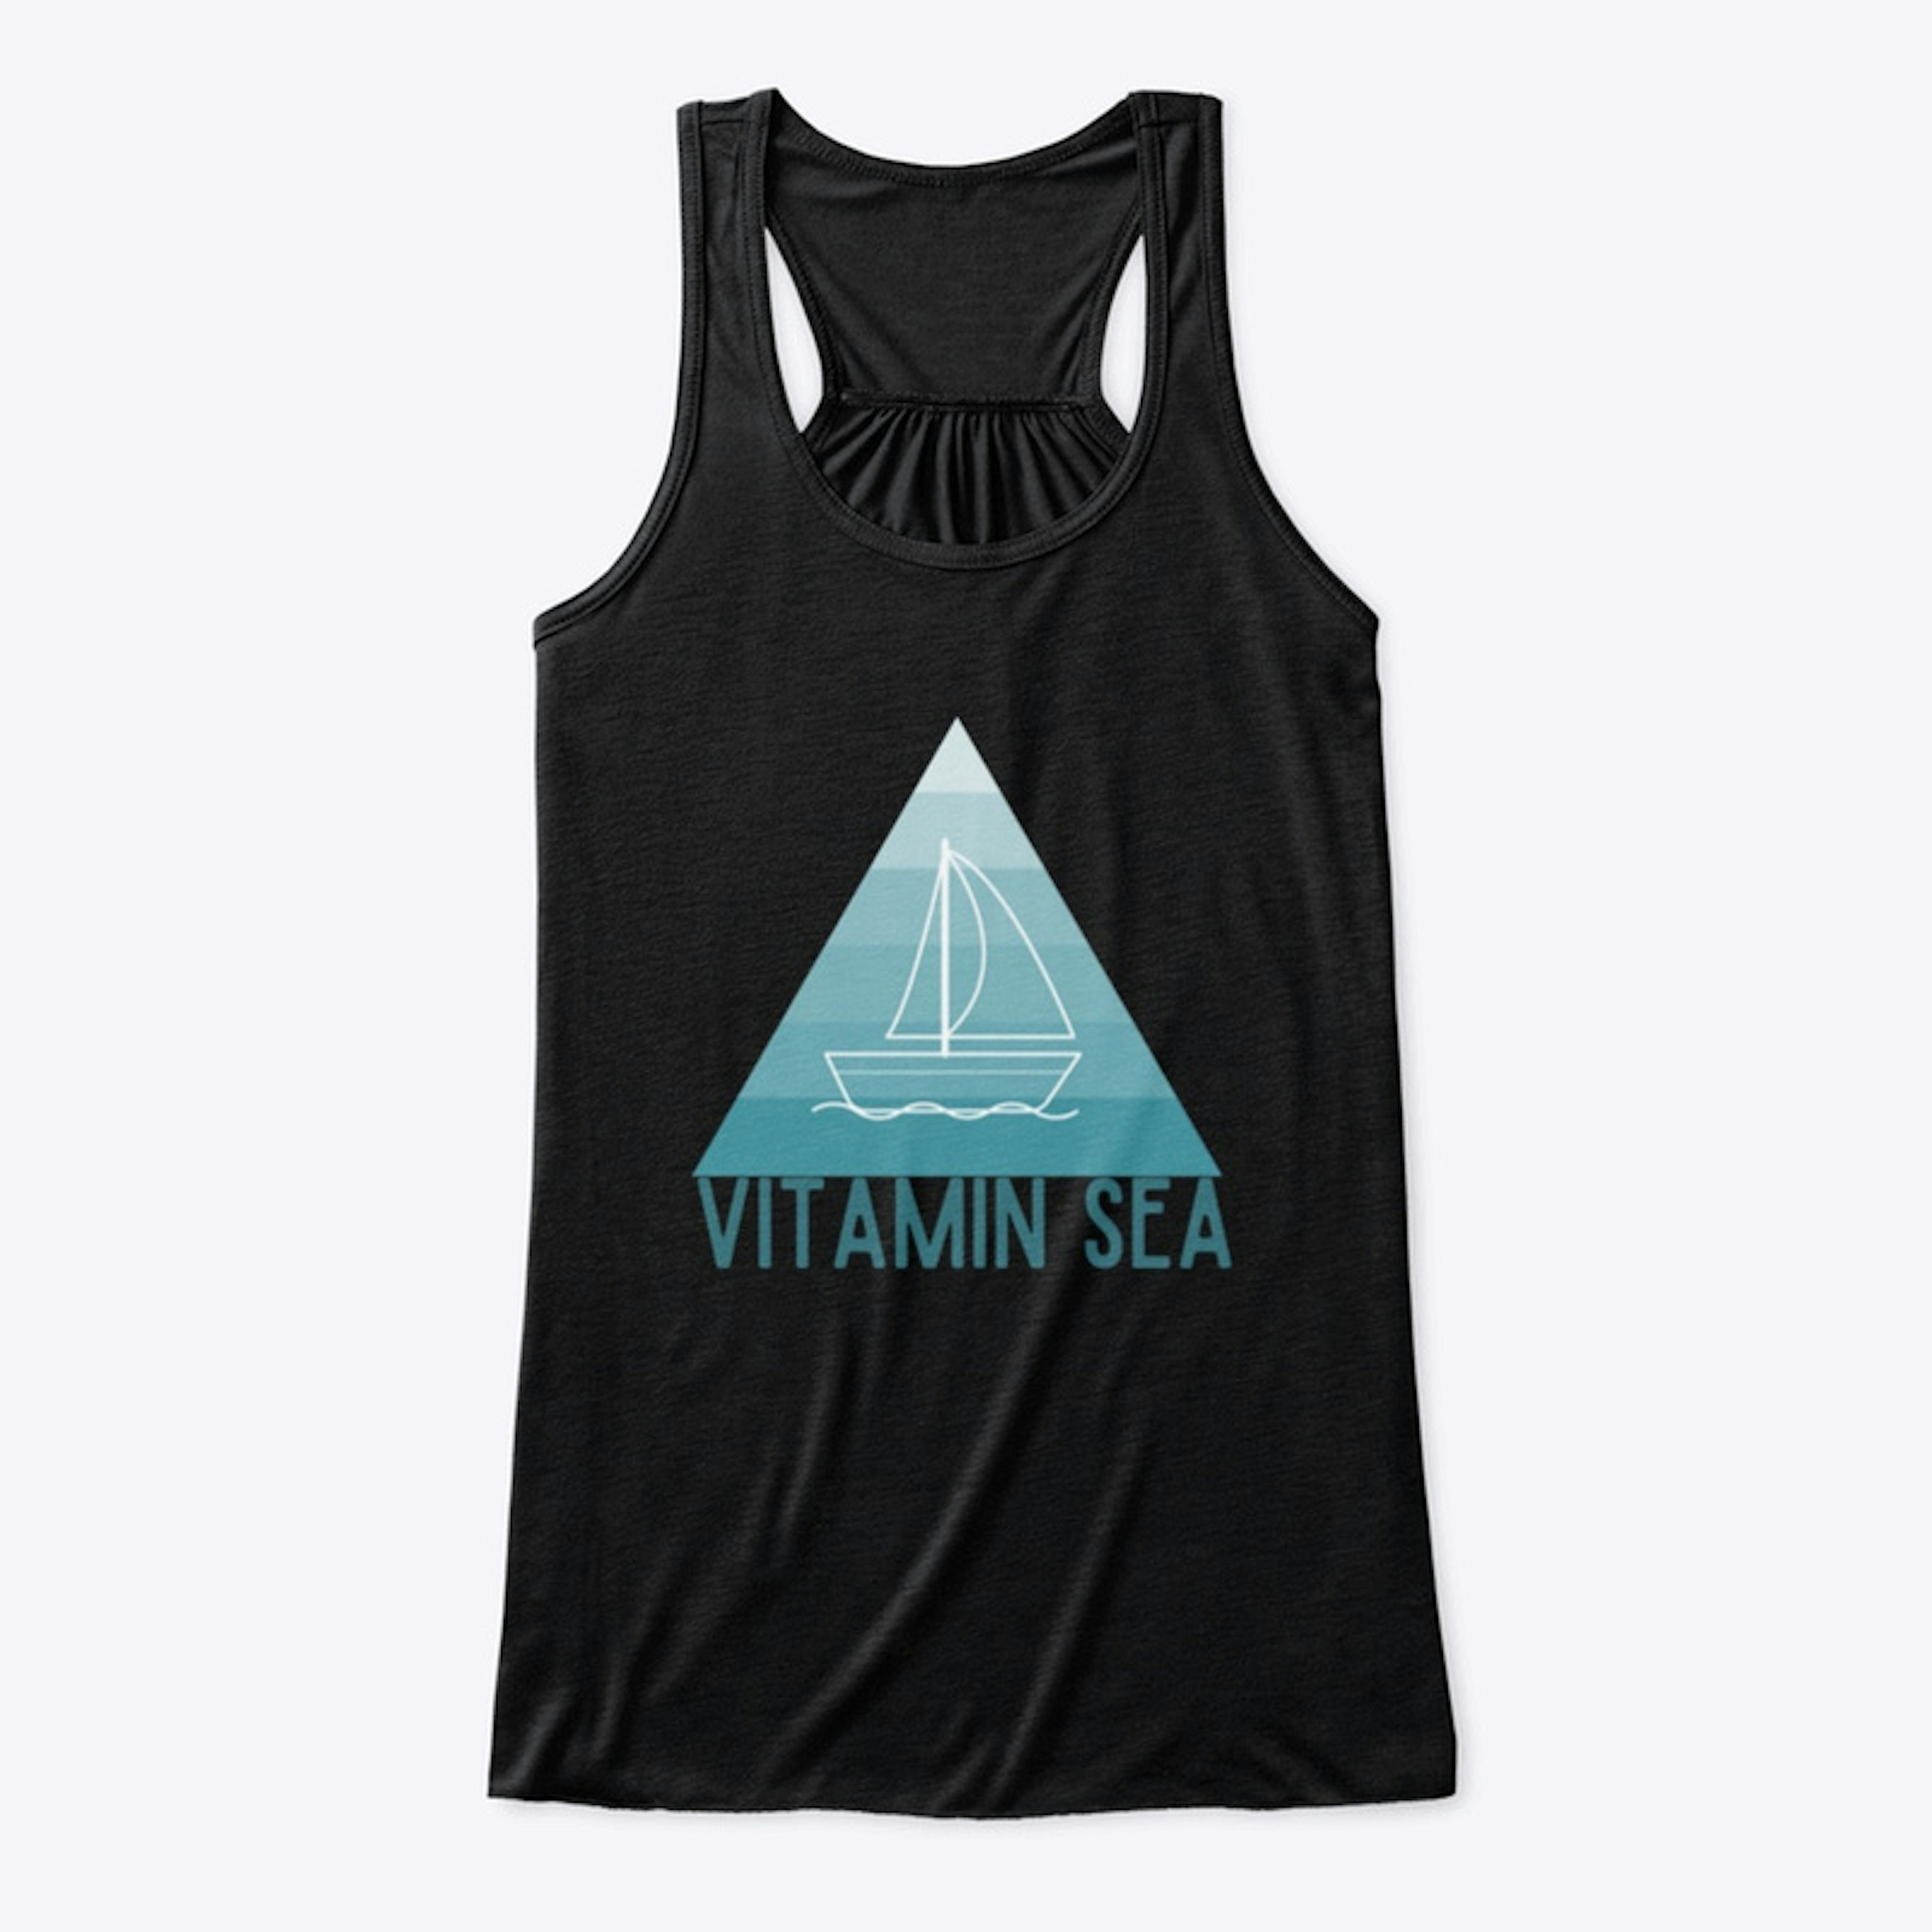 Vitamin "Sea"